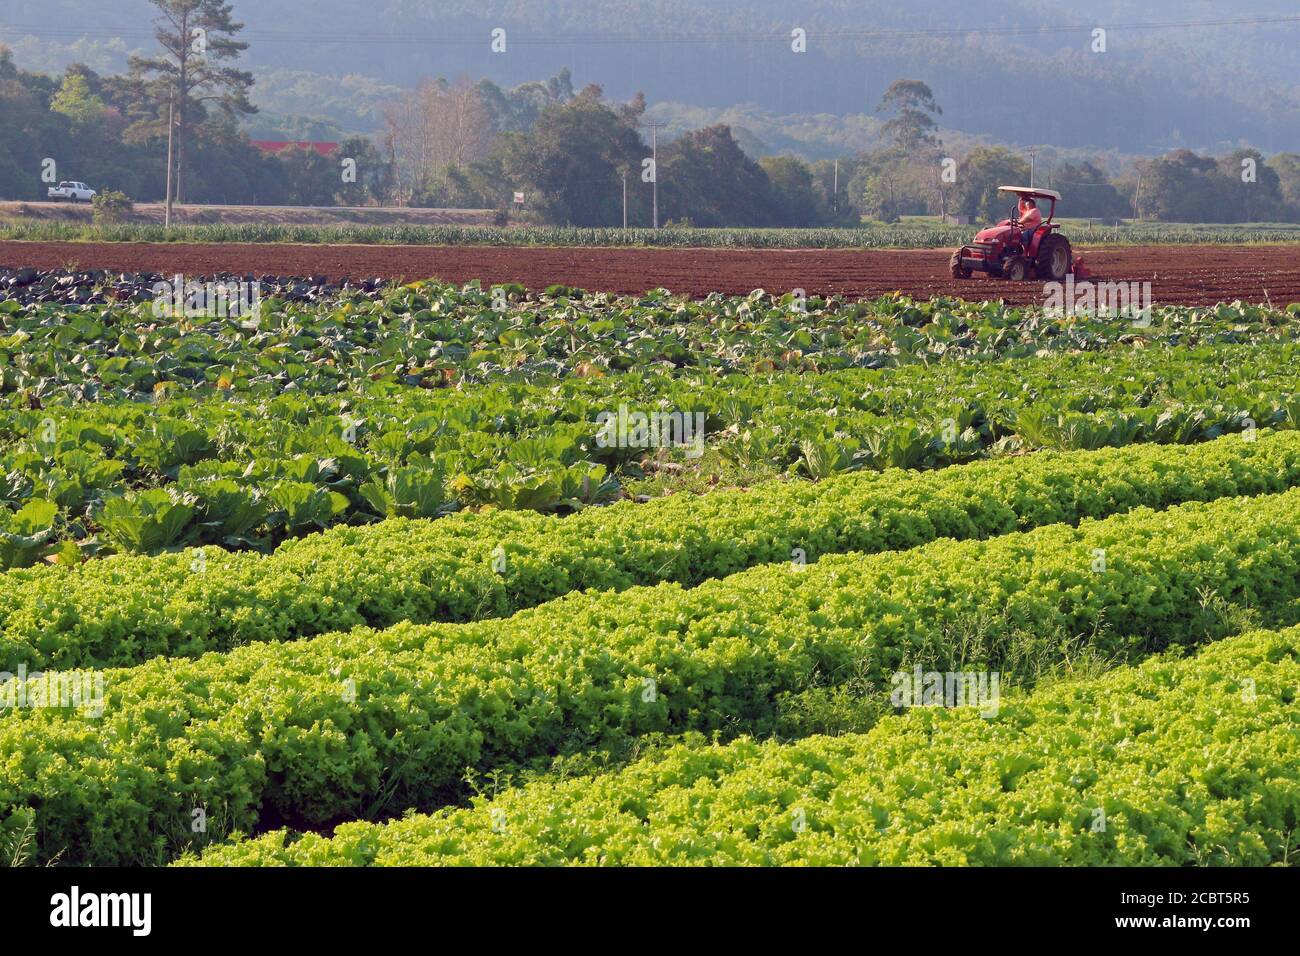 Agricoltura. Grandi piantagioni di ortaggi e trattori che lavorano e preparano il terreno per piantare. Foto Stock